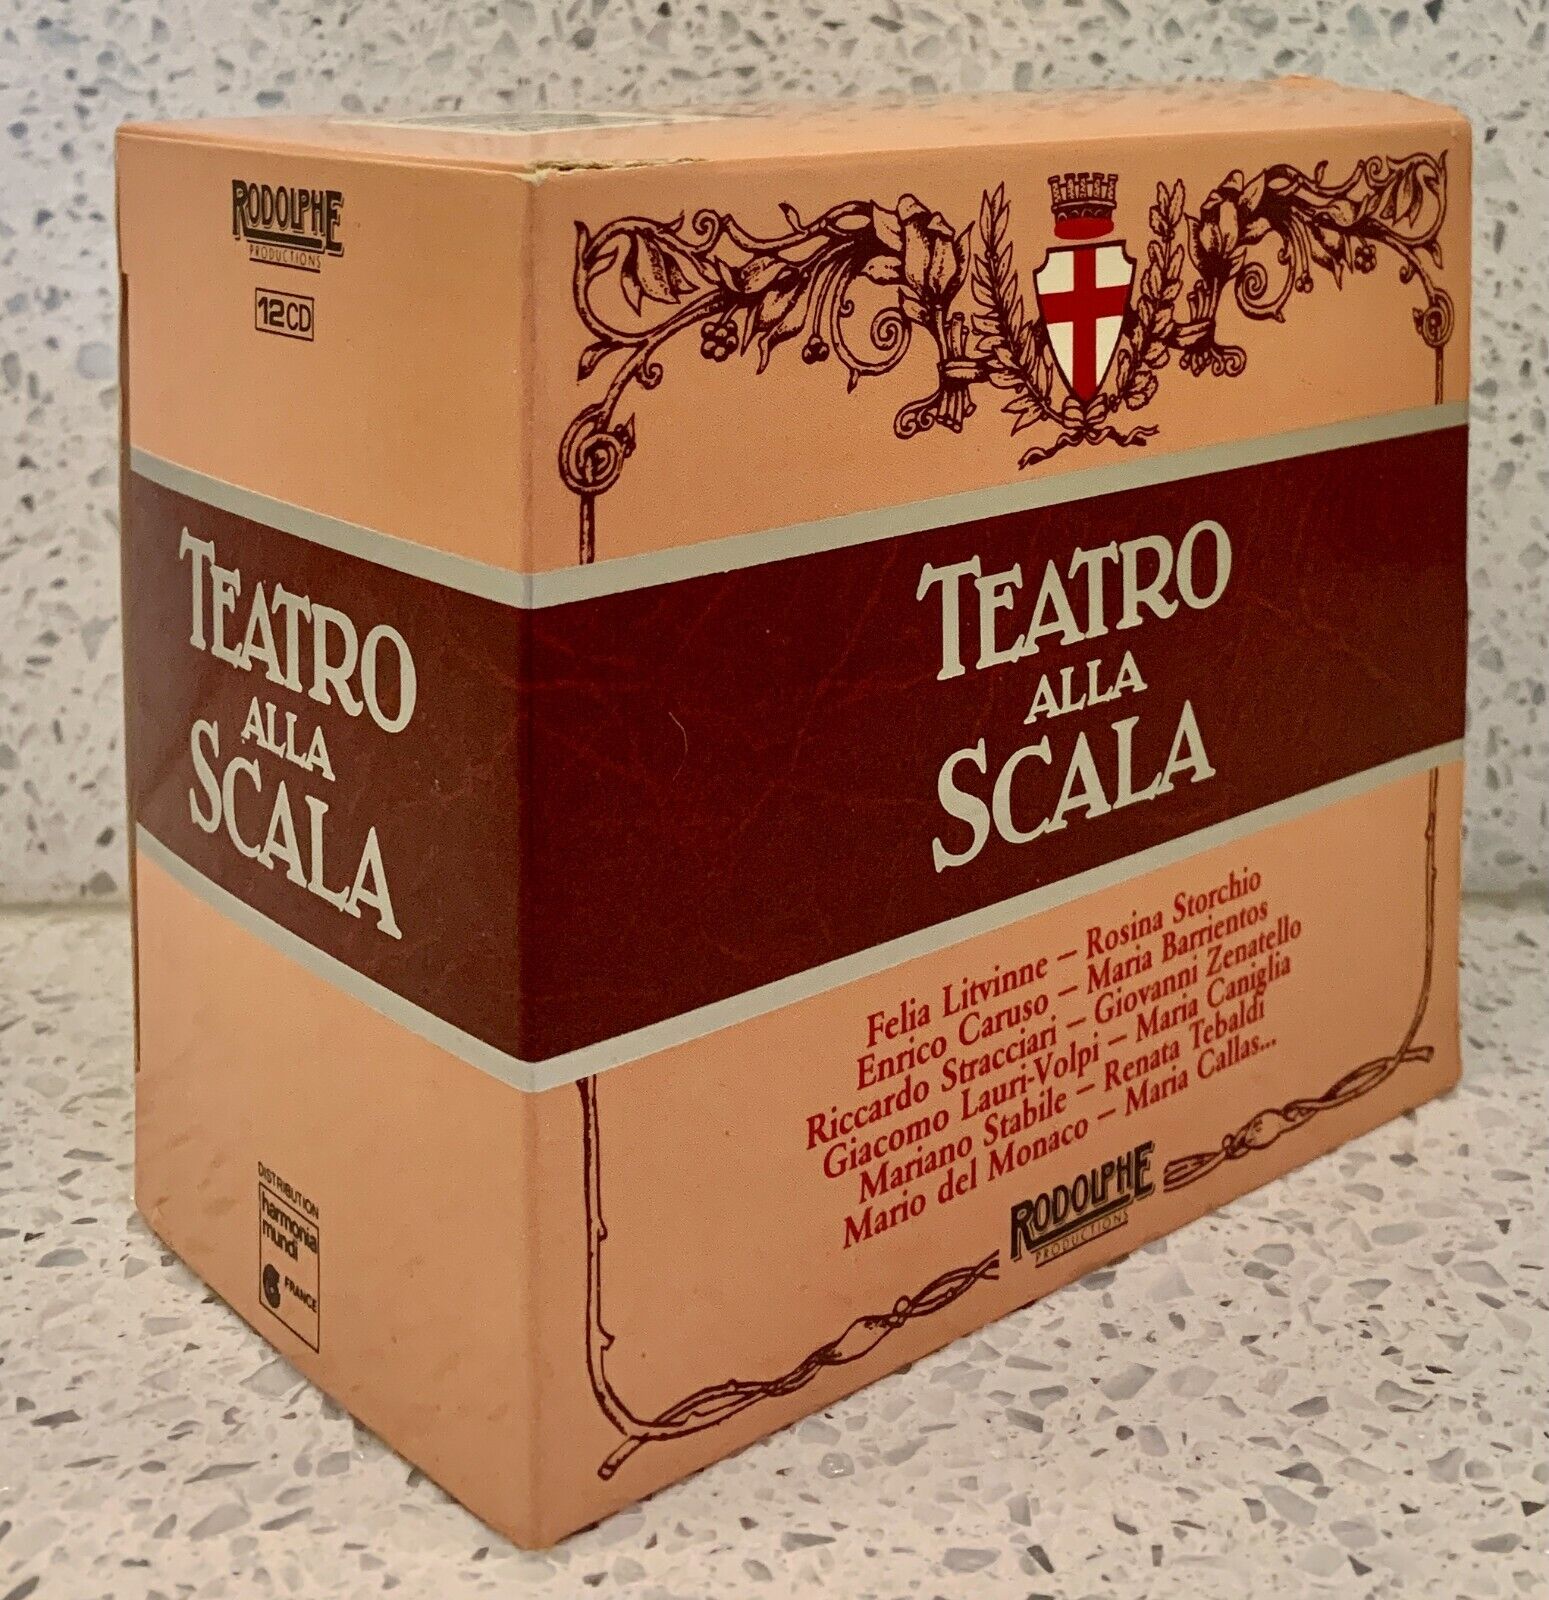 Teatro alla Scala [A Celebration] (12 discs Rodolphe) Verdi Operas Singers Arias